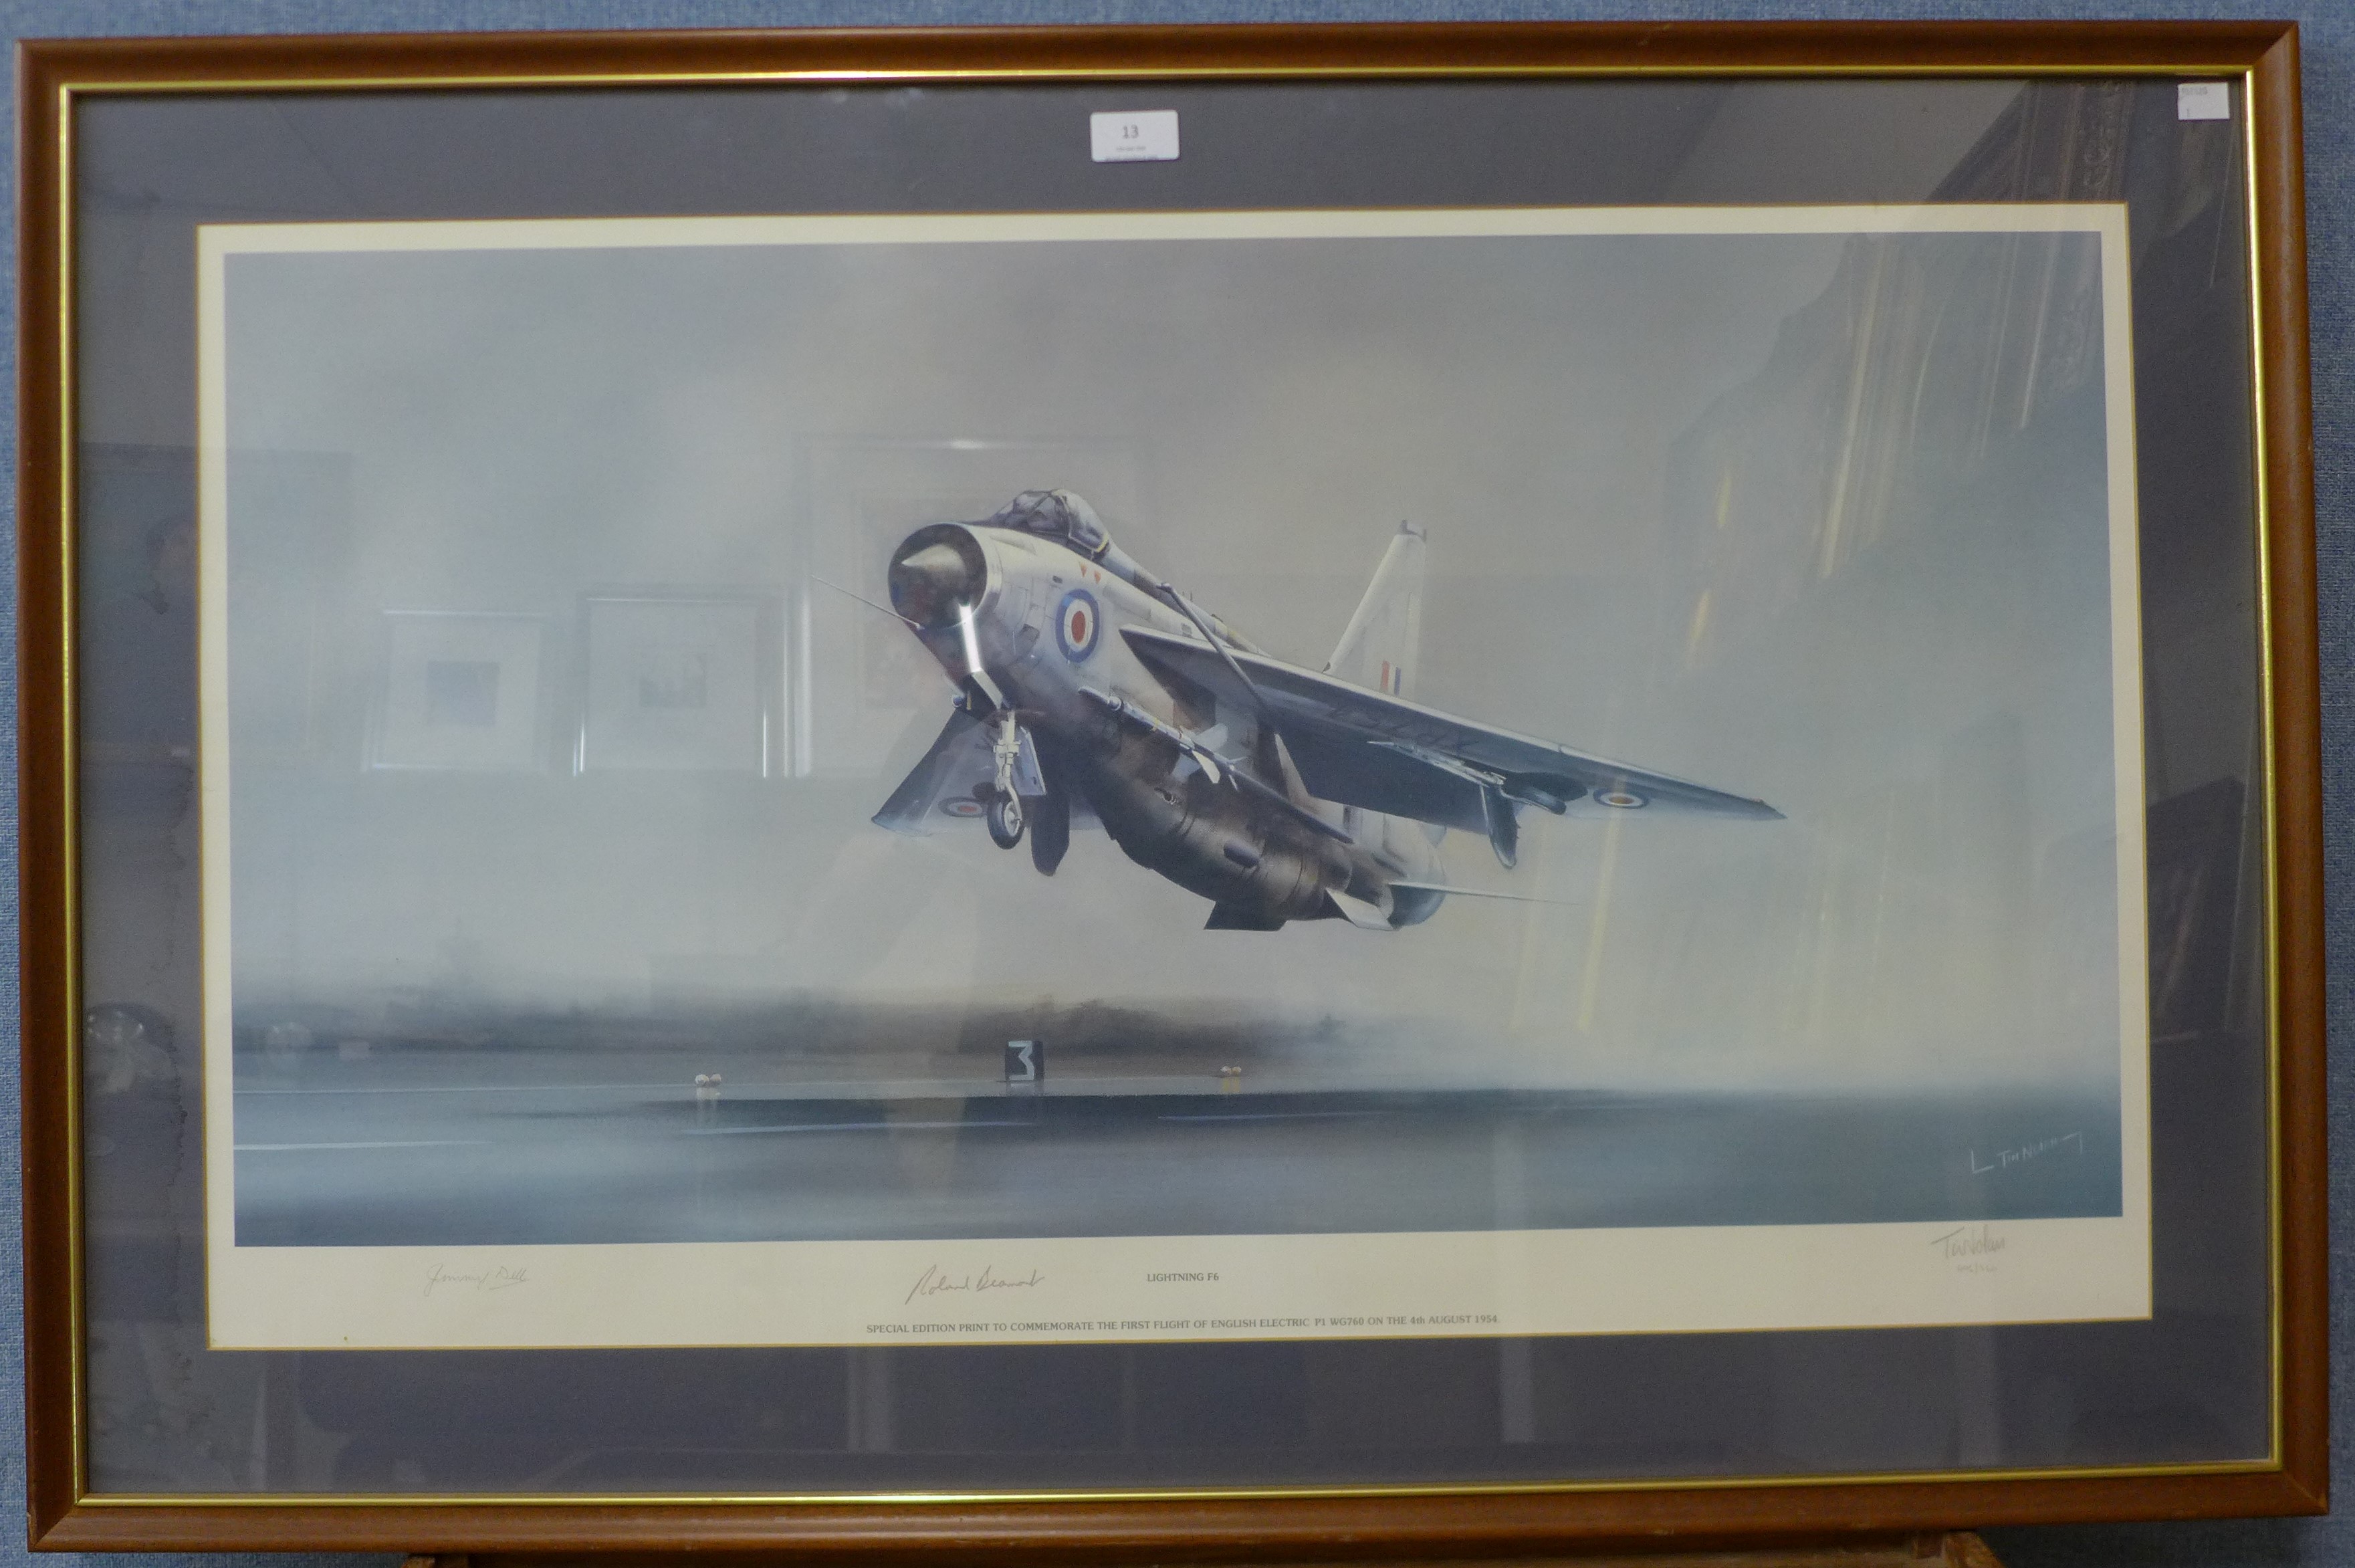 A signed Tim Nolan print, Lightning F6, framed